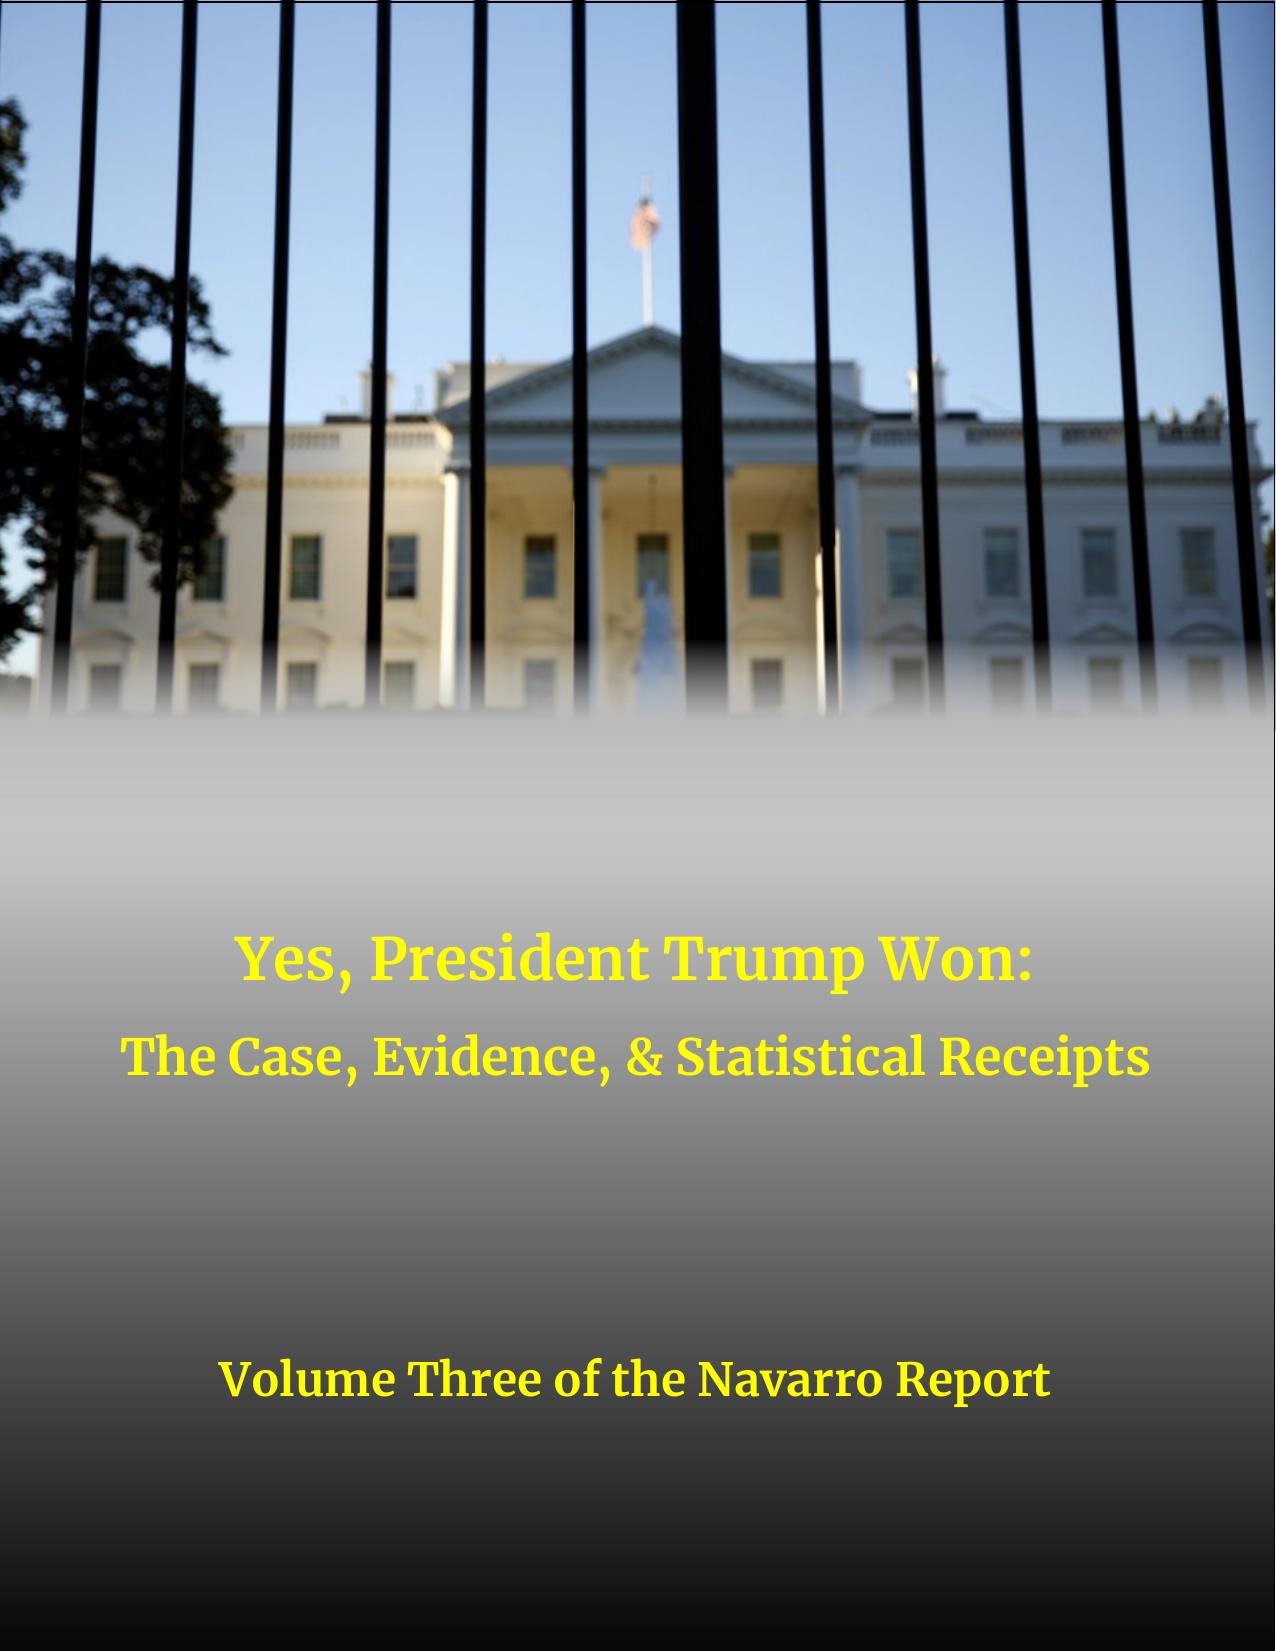 The Navarro Report Volume III Final 1.13.2